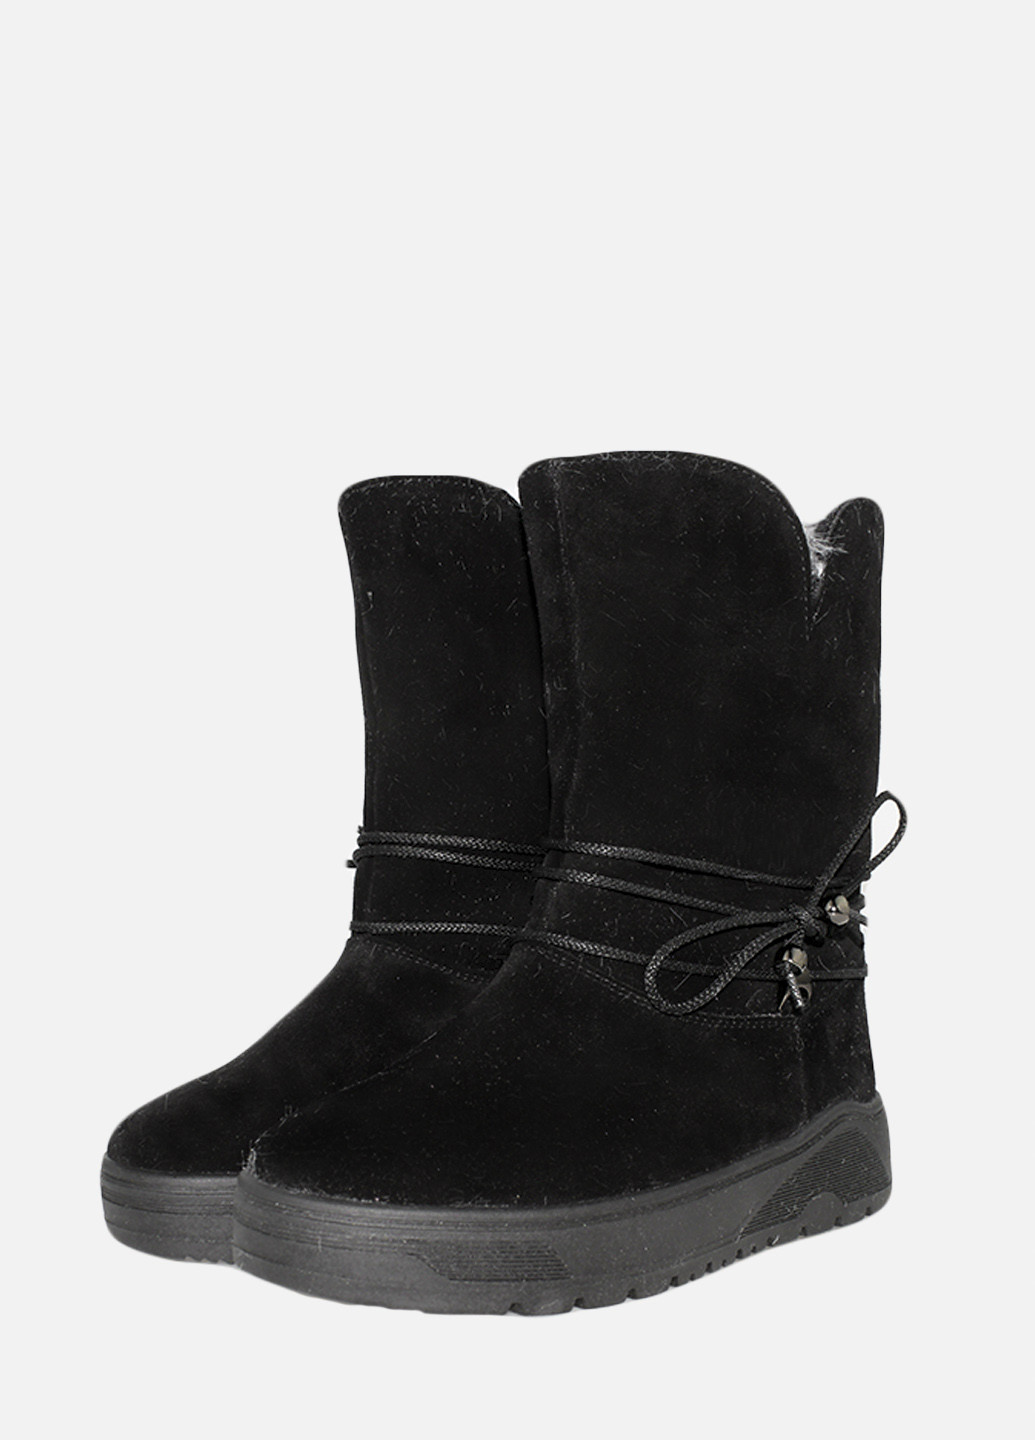 Зимние ботинки rm5050-11 черный Masis из натуральной замши